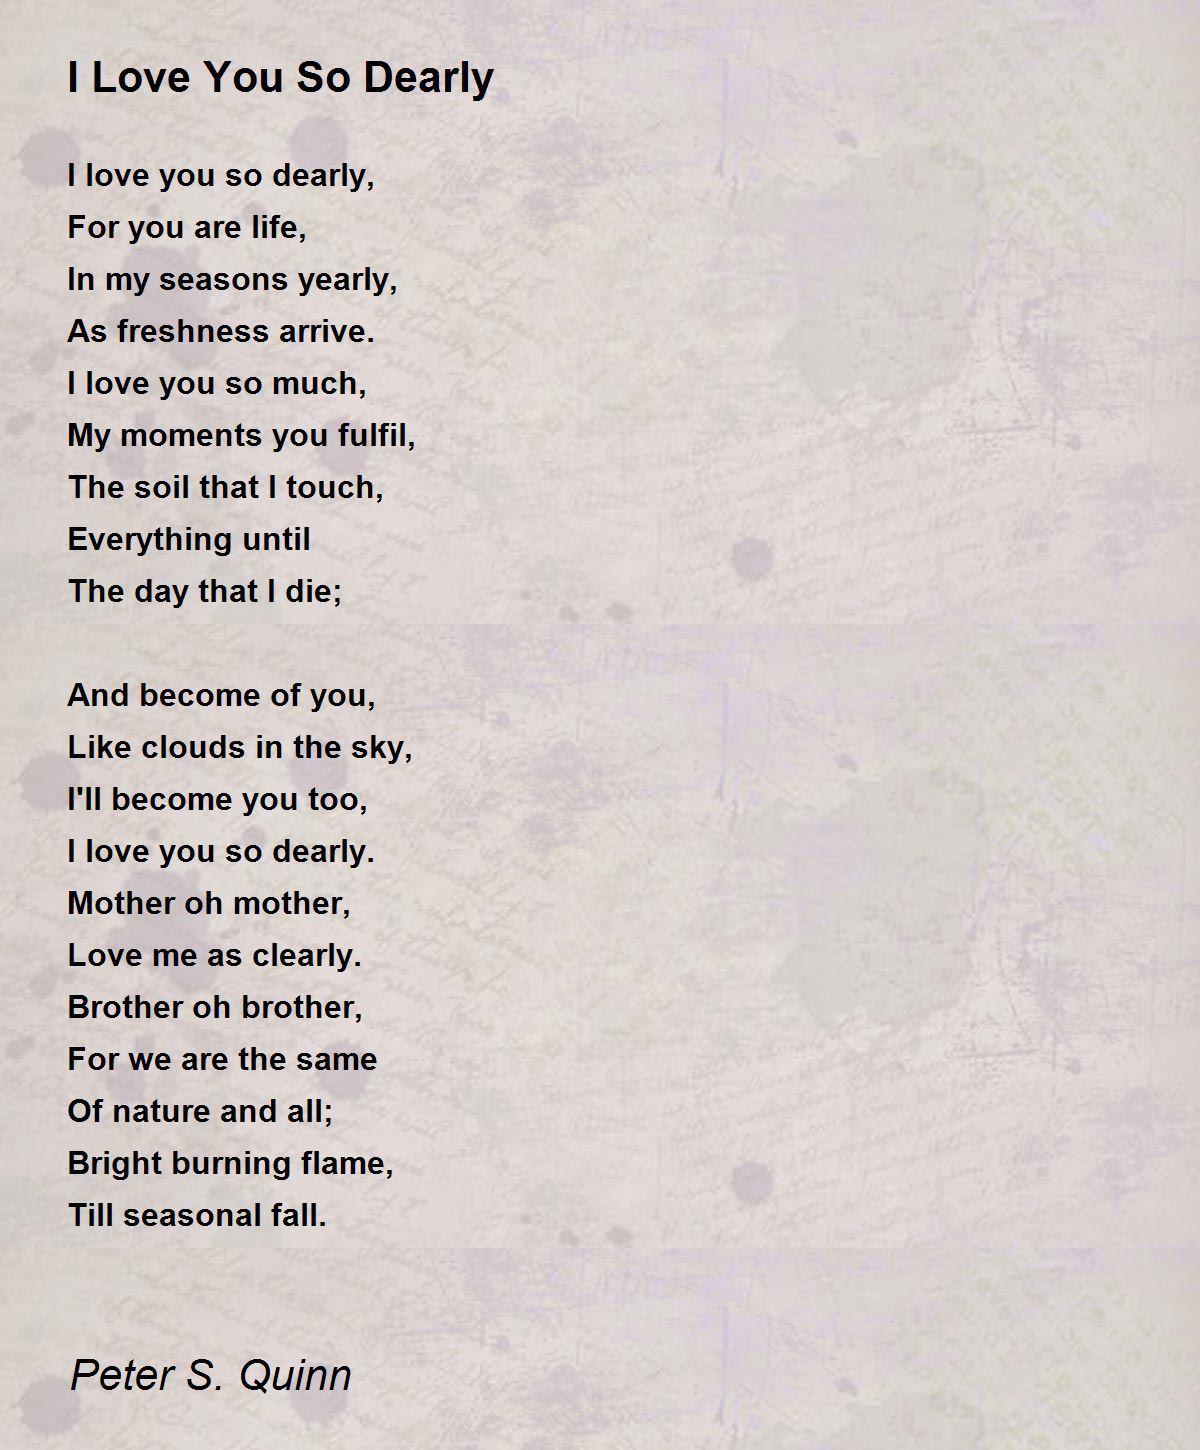 I Love You So Dearly - I Love You So Dearly Poem by Peter S. Quinn